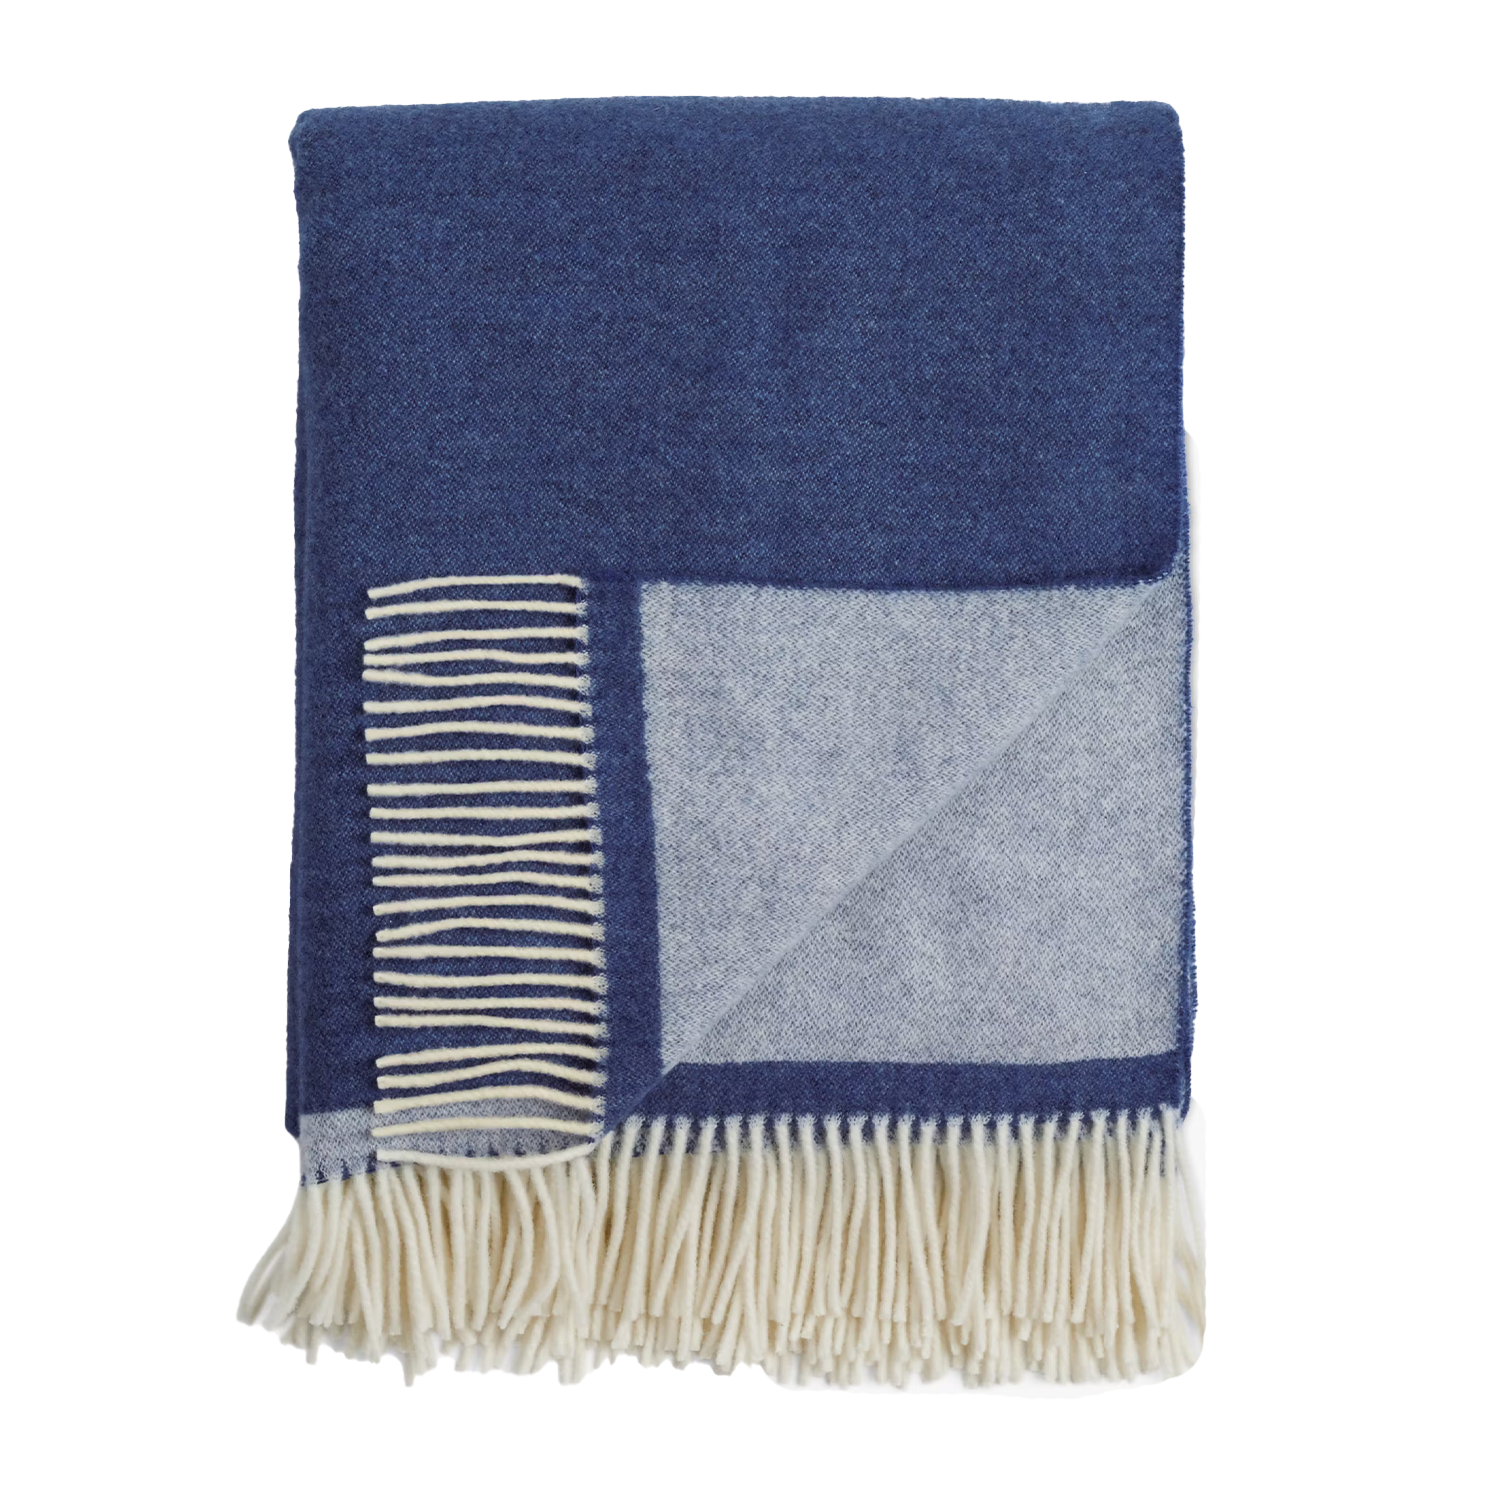 blue throw wool blanket